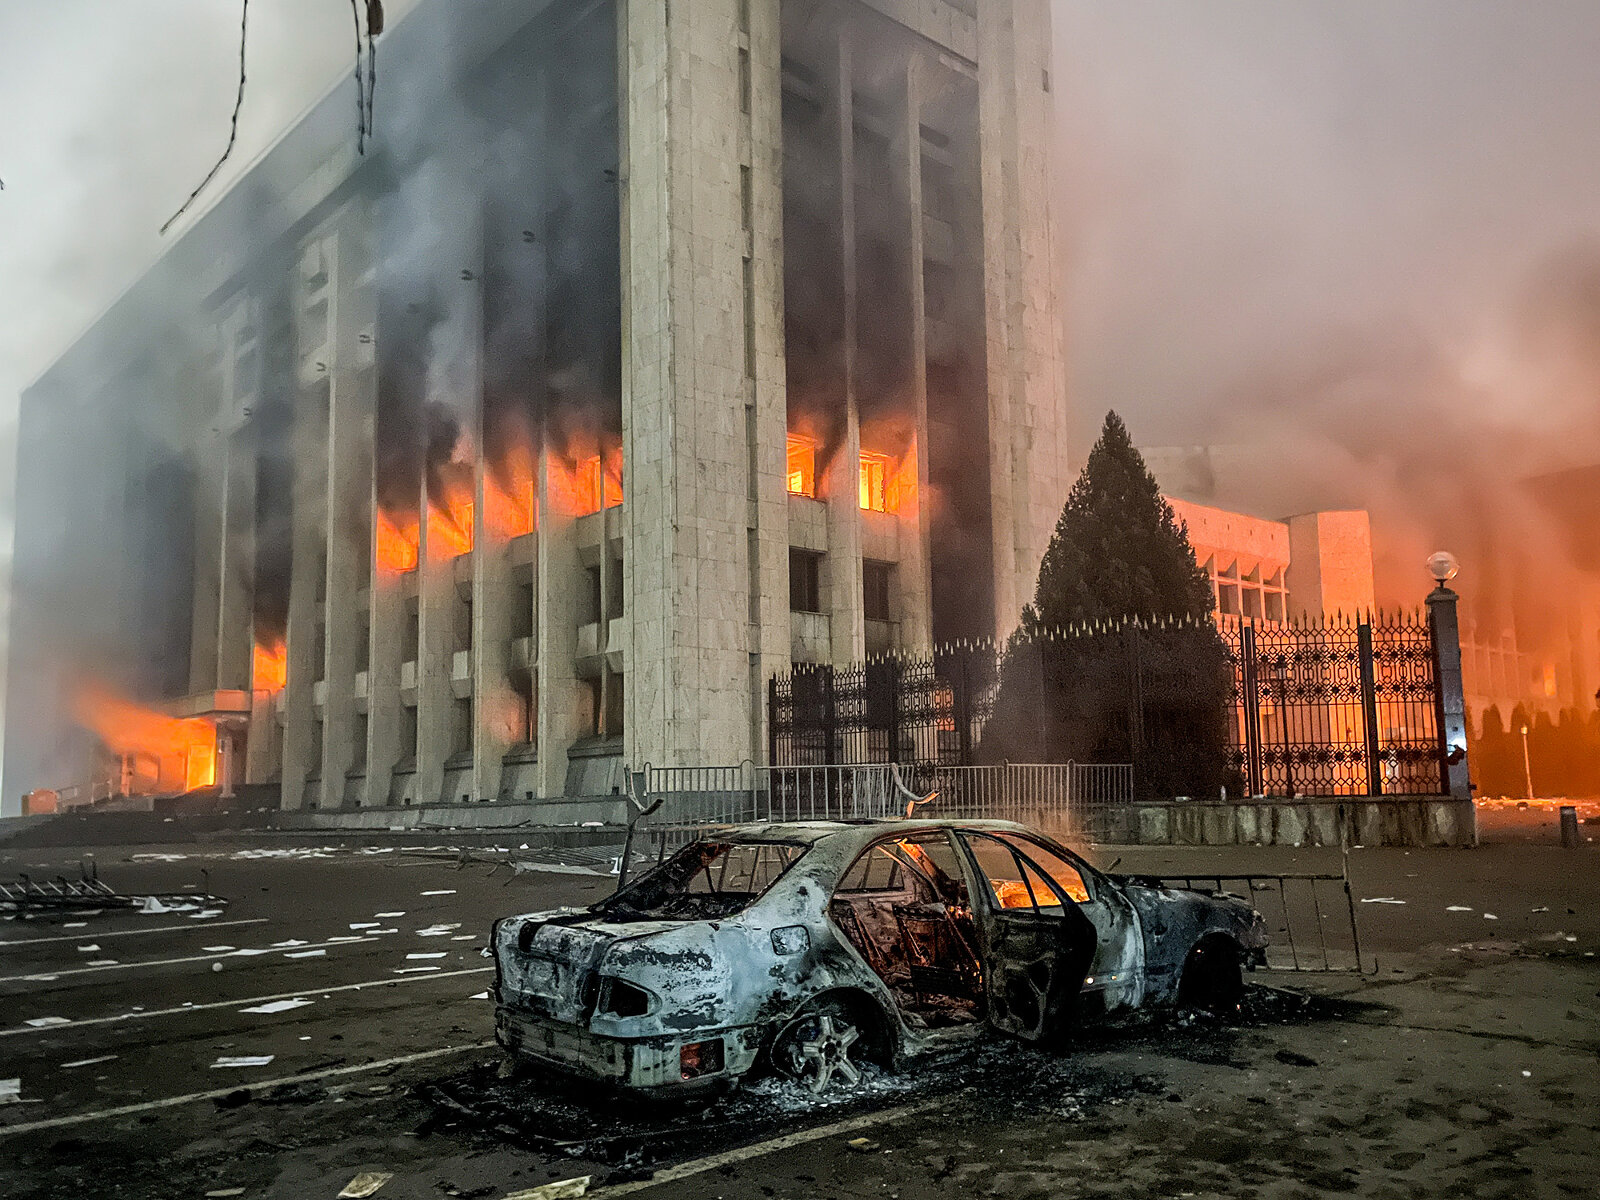 <p>Одним из самых ярких событий этих дней стал захват&nbsp;акимата, здания администрации&nbsp;Алматы, 5 января. После этого там <a href="http://tvrain.ru/news/v_almaty_protestujuschie_nachali_shturm_mestnoj_administratsii-545247/" target="_blank">начался </a>пожар.&nbsp;Перед зданием, по сообщениям СМИ, собралось около 10 тысяч человек, часть из которых пошла на штурм. До захвата из акимата успели вывести всех сотрудников.</p>